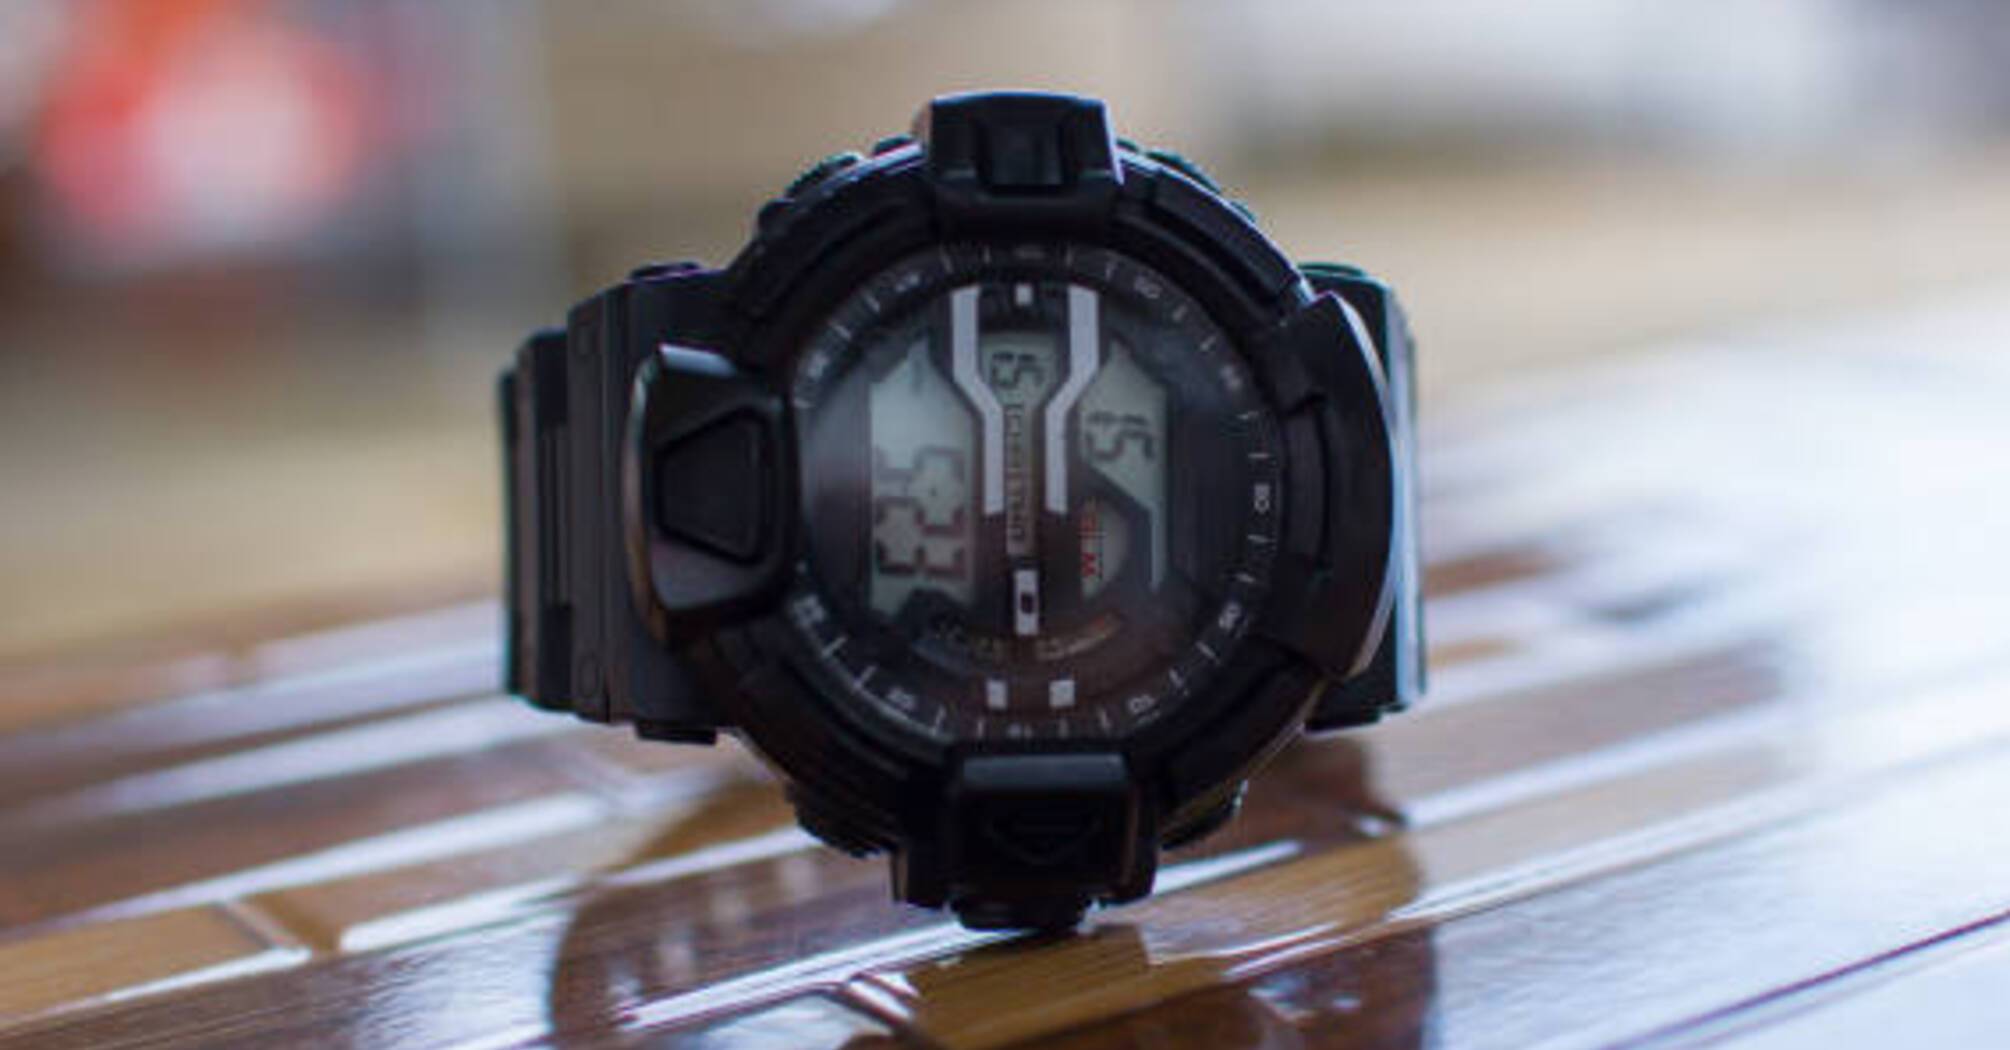 Porównanie Pro Trek i G-Shock: który zegarek lepiej wybrać?